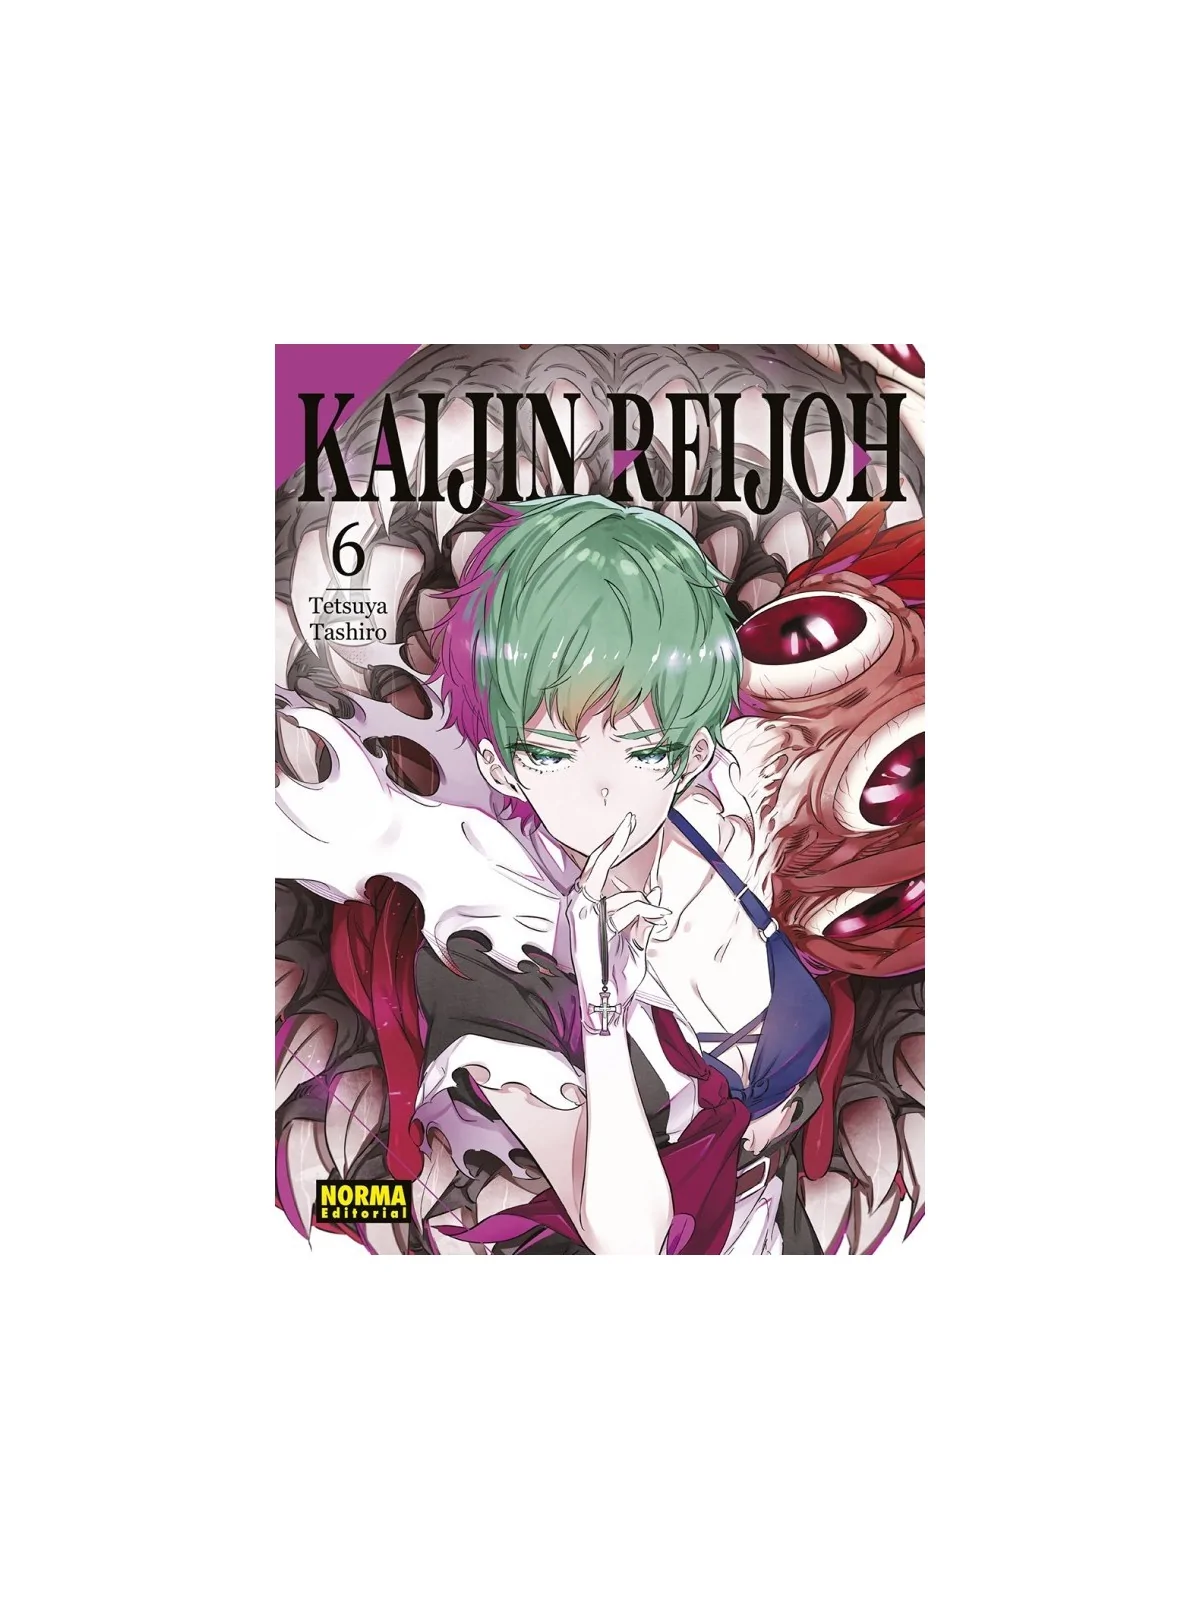 Comprar Kaijin Reijoh 06 barato al mejor precio 8,55 € de Norma Editor